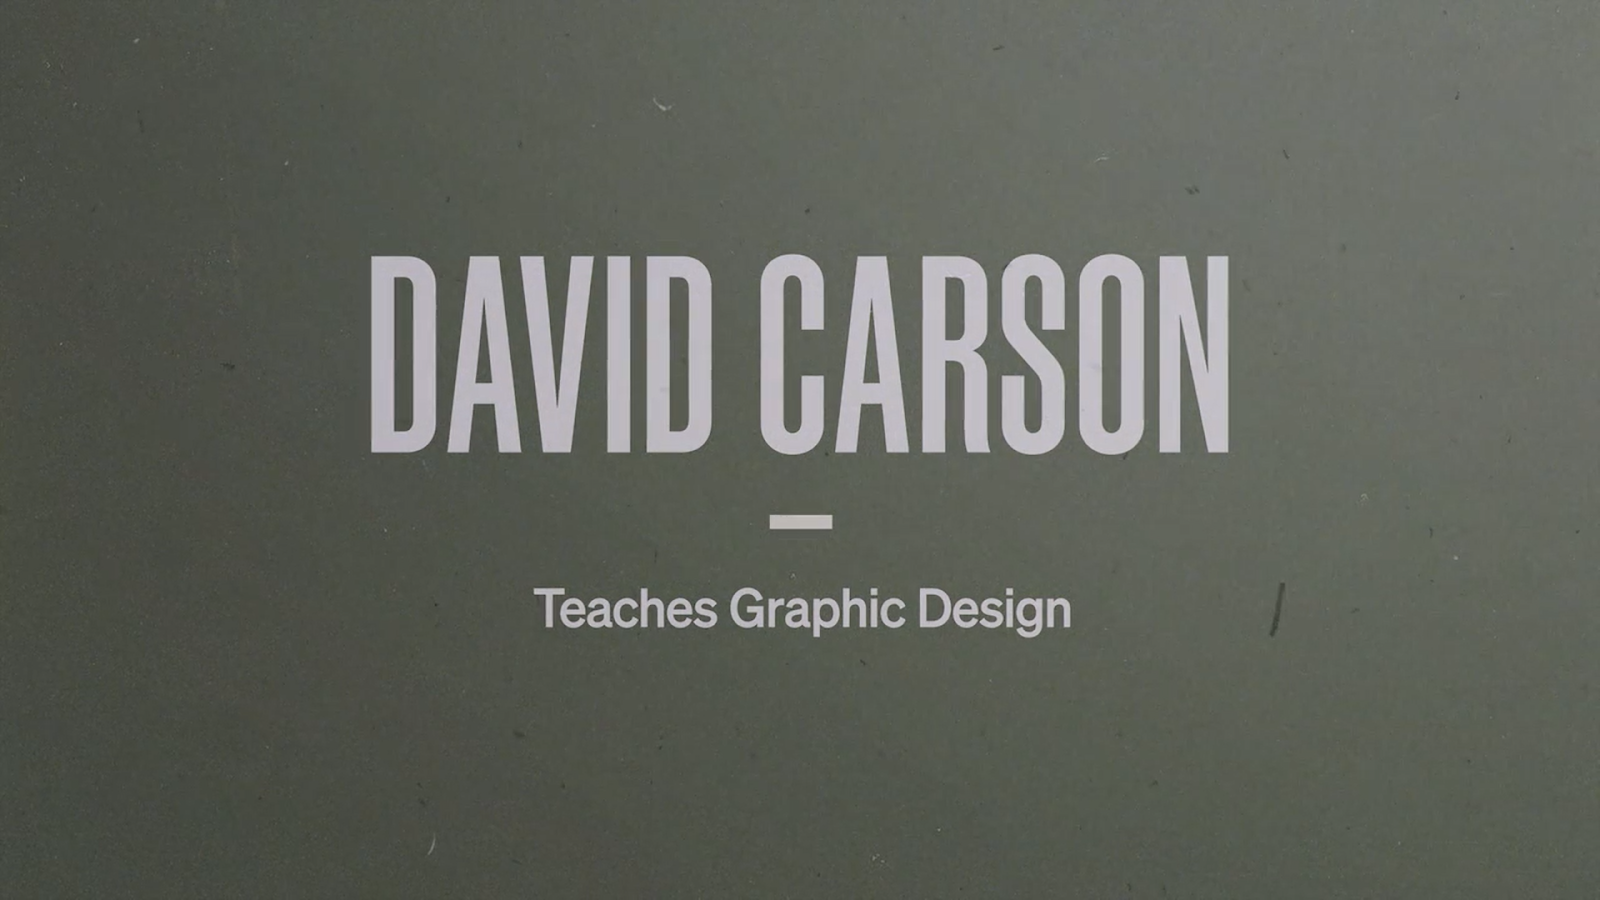 Heading of David Carson's masterclass